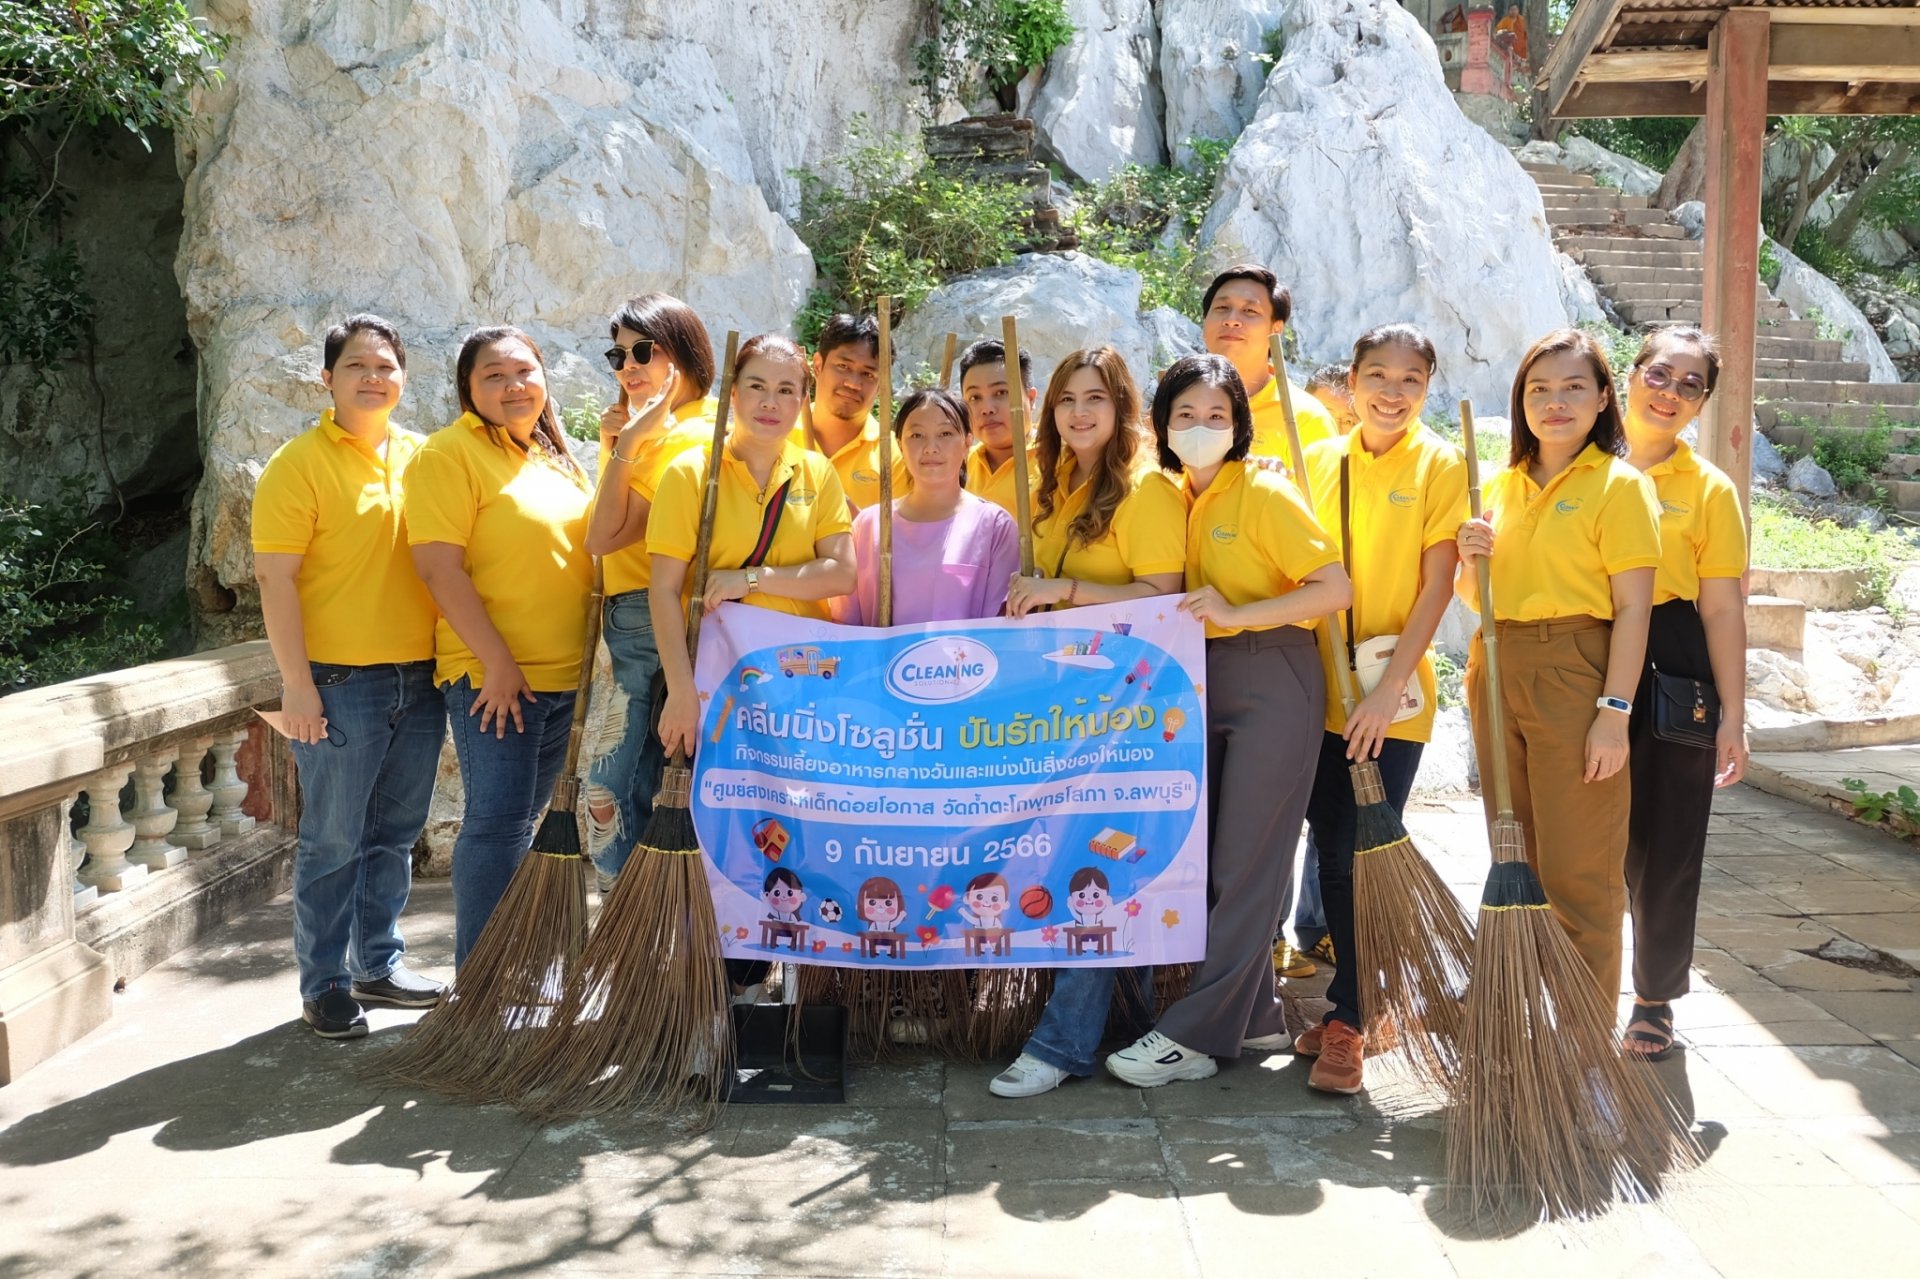 โครงการ CNS ปันรักให้น้อง ประจำปี 2566 by Cleaning Solution